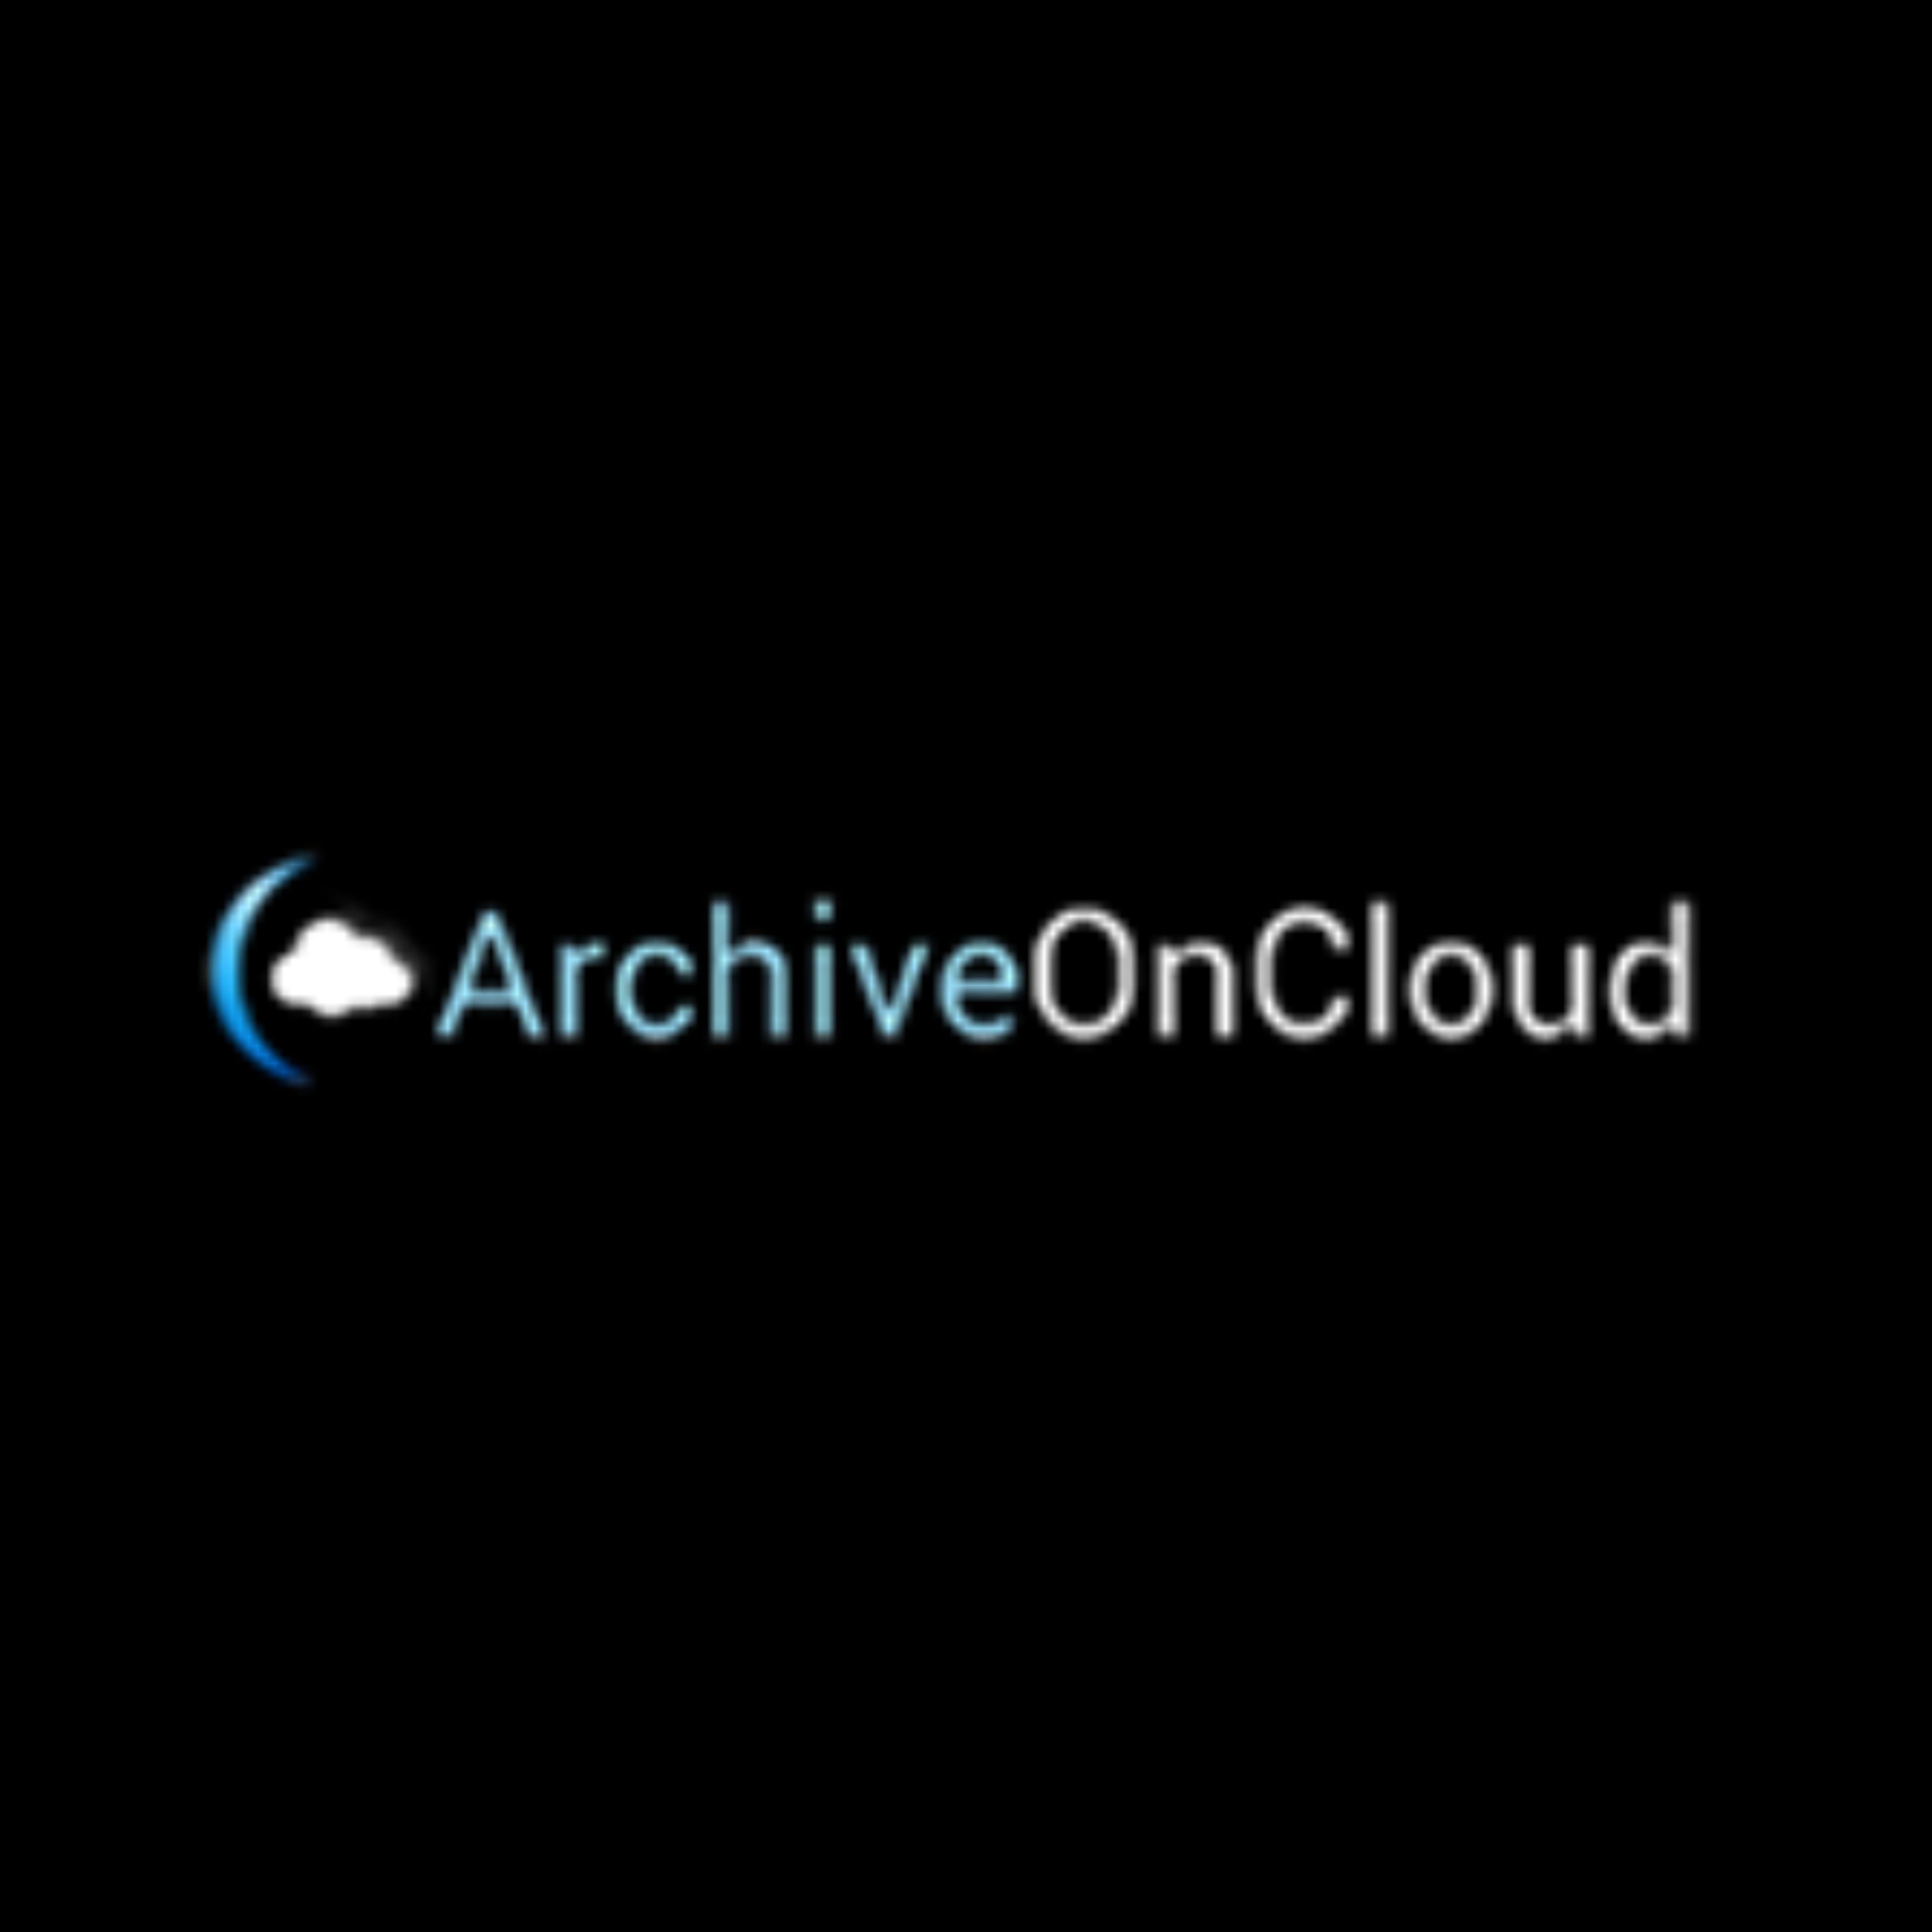 Archive OnCloud